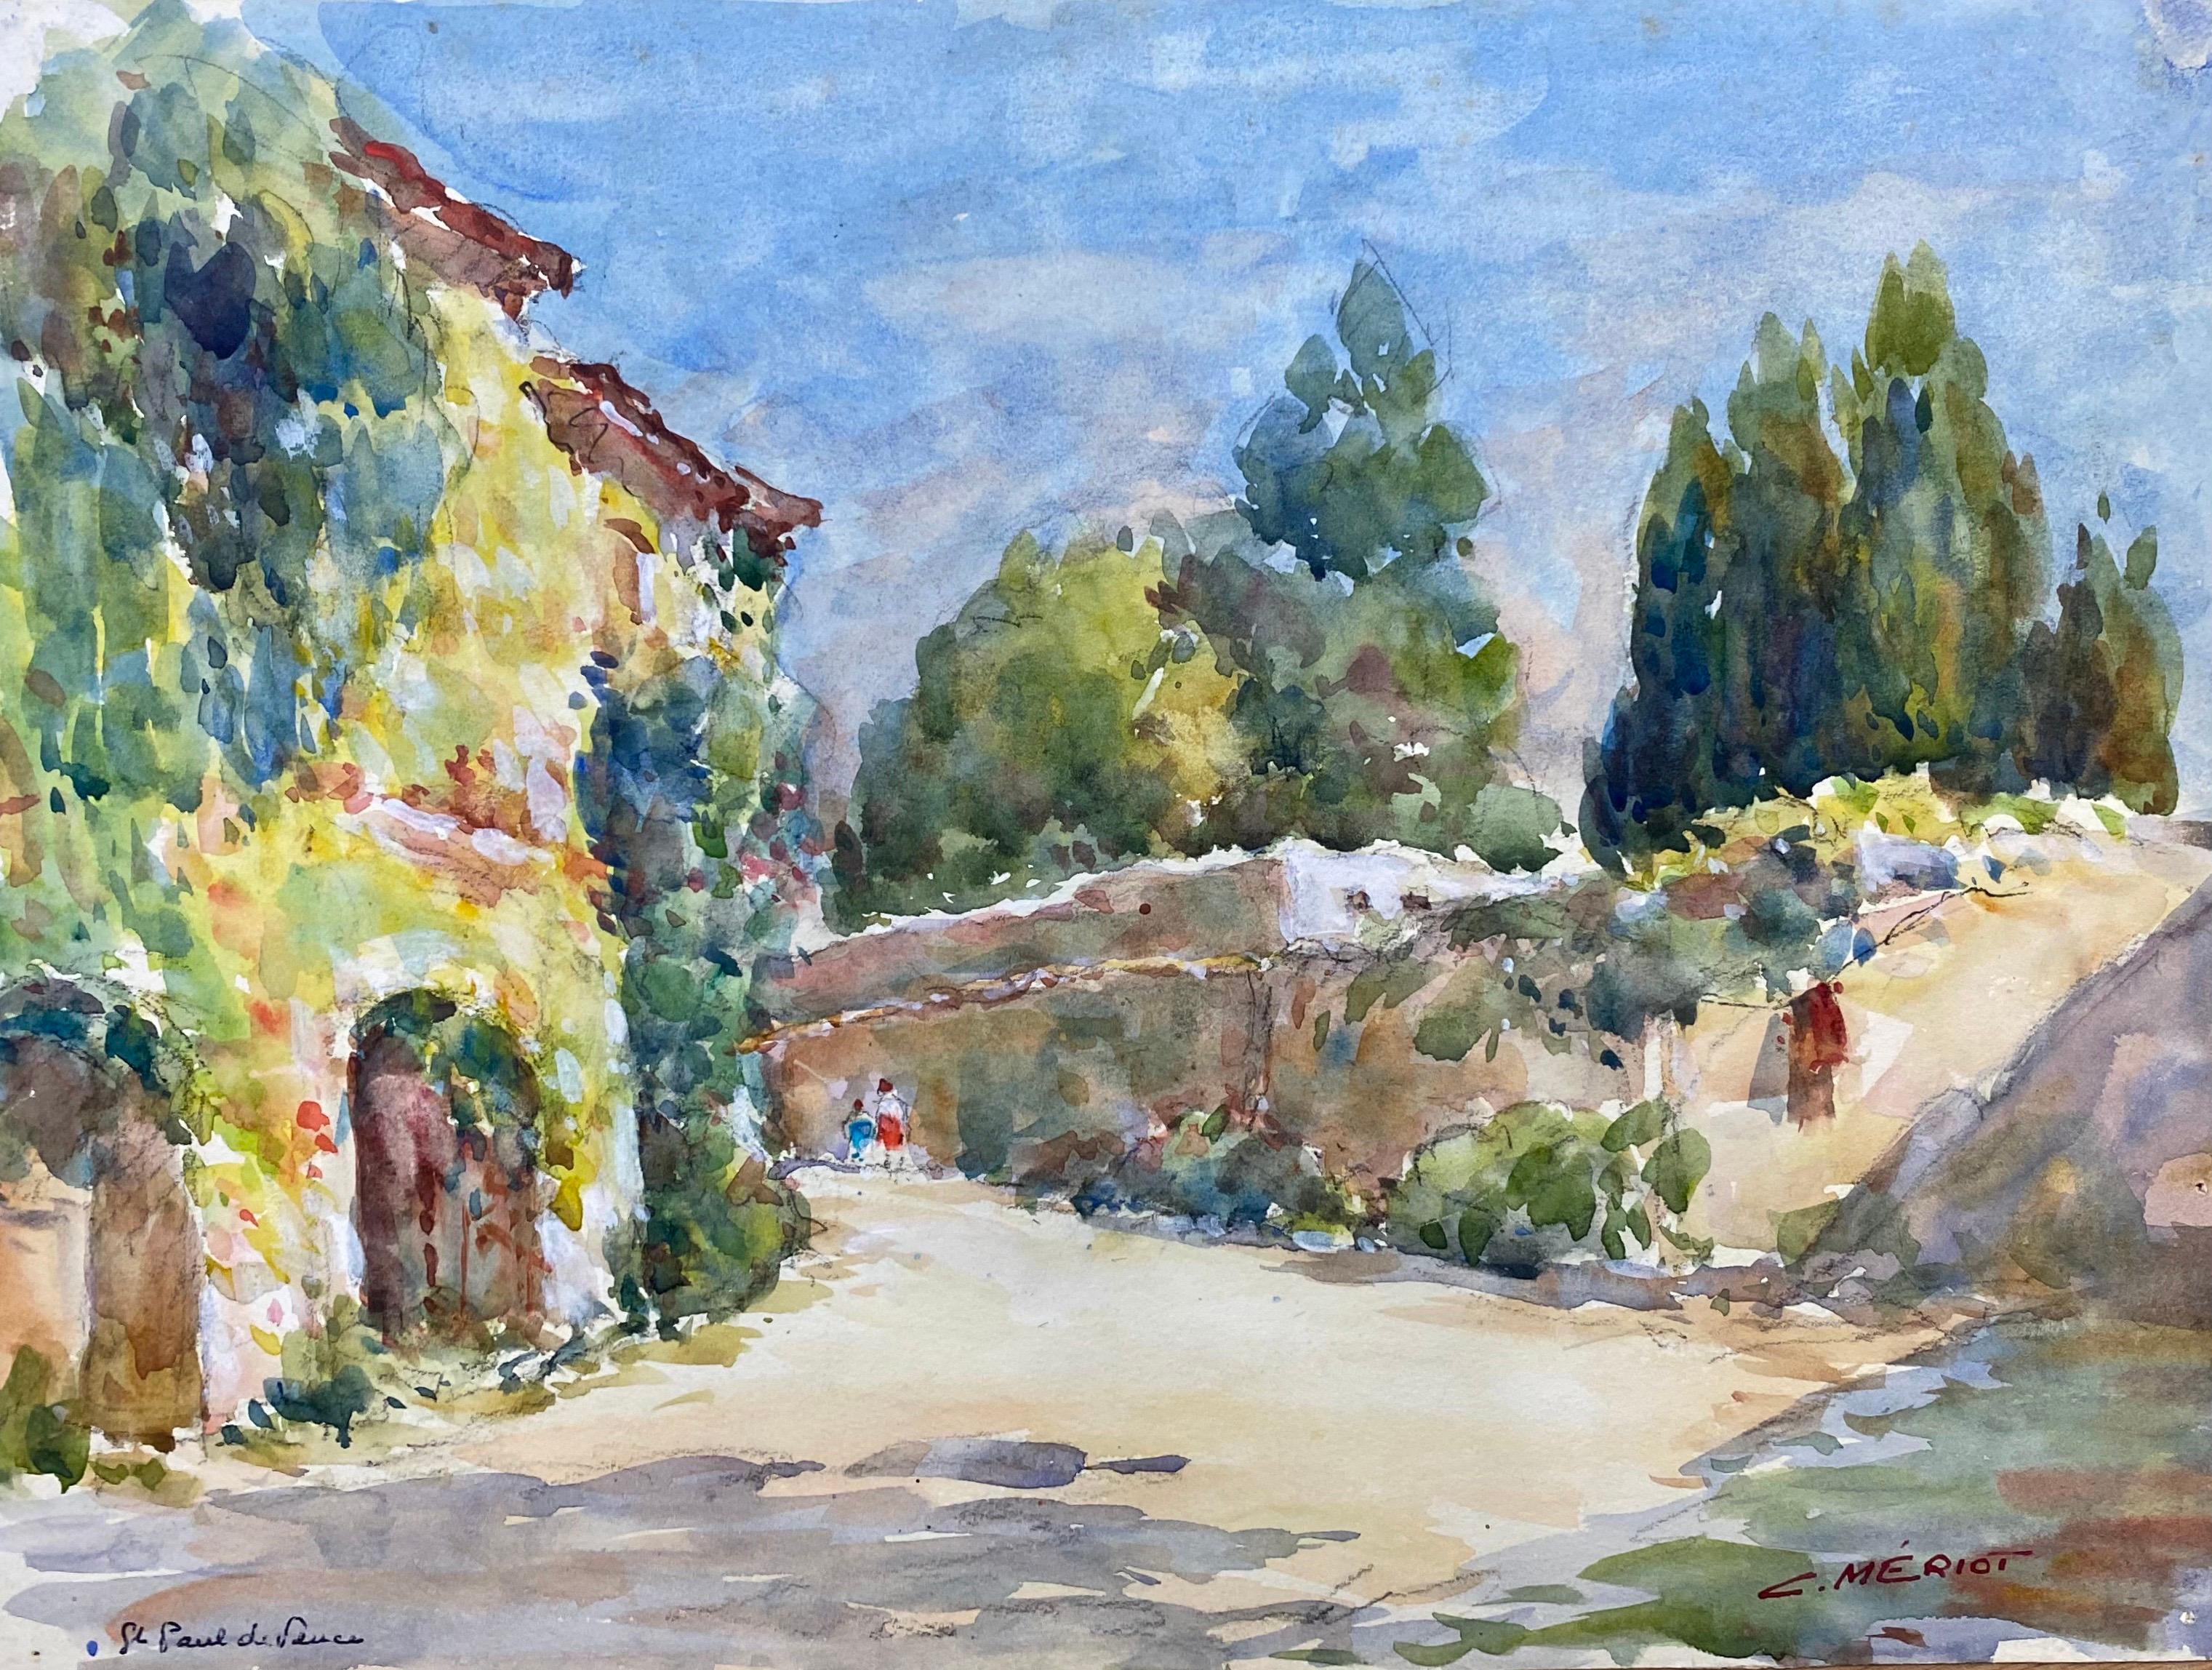 Landscape Painting Camille Meriot - ST PAUL DE VENCE  Peinture à l'aquarelle française signée - Rues françaises colorées